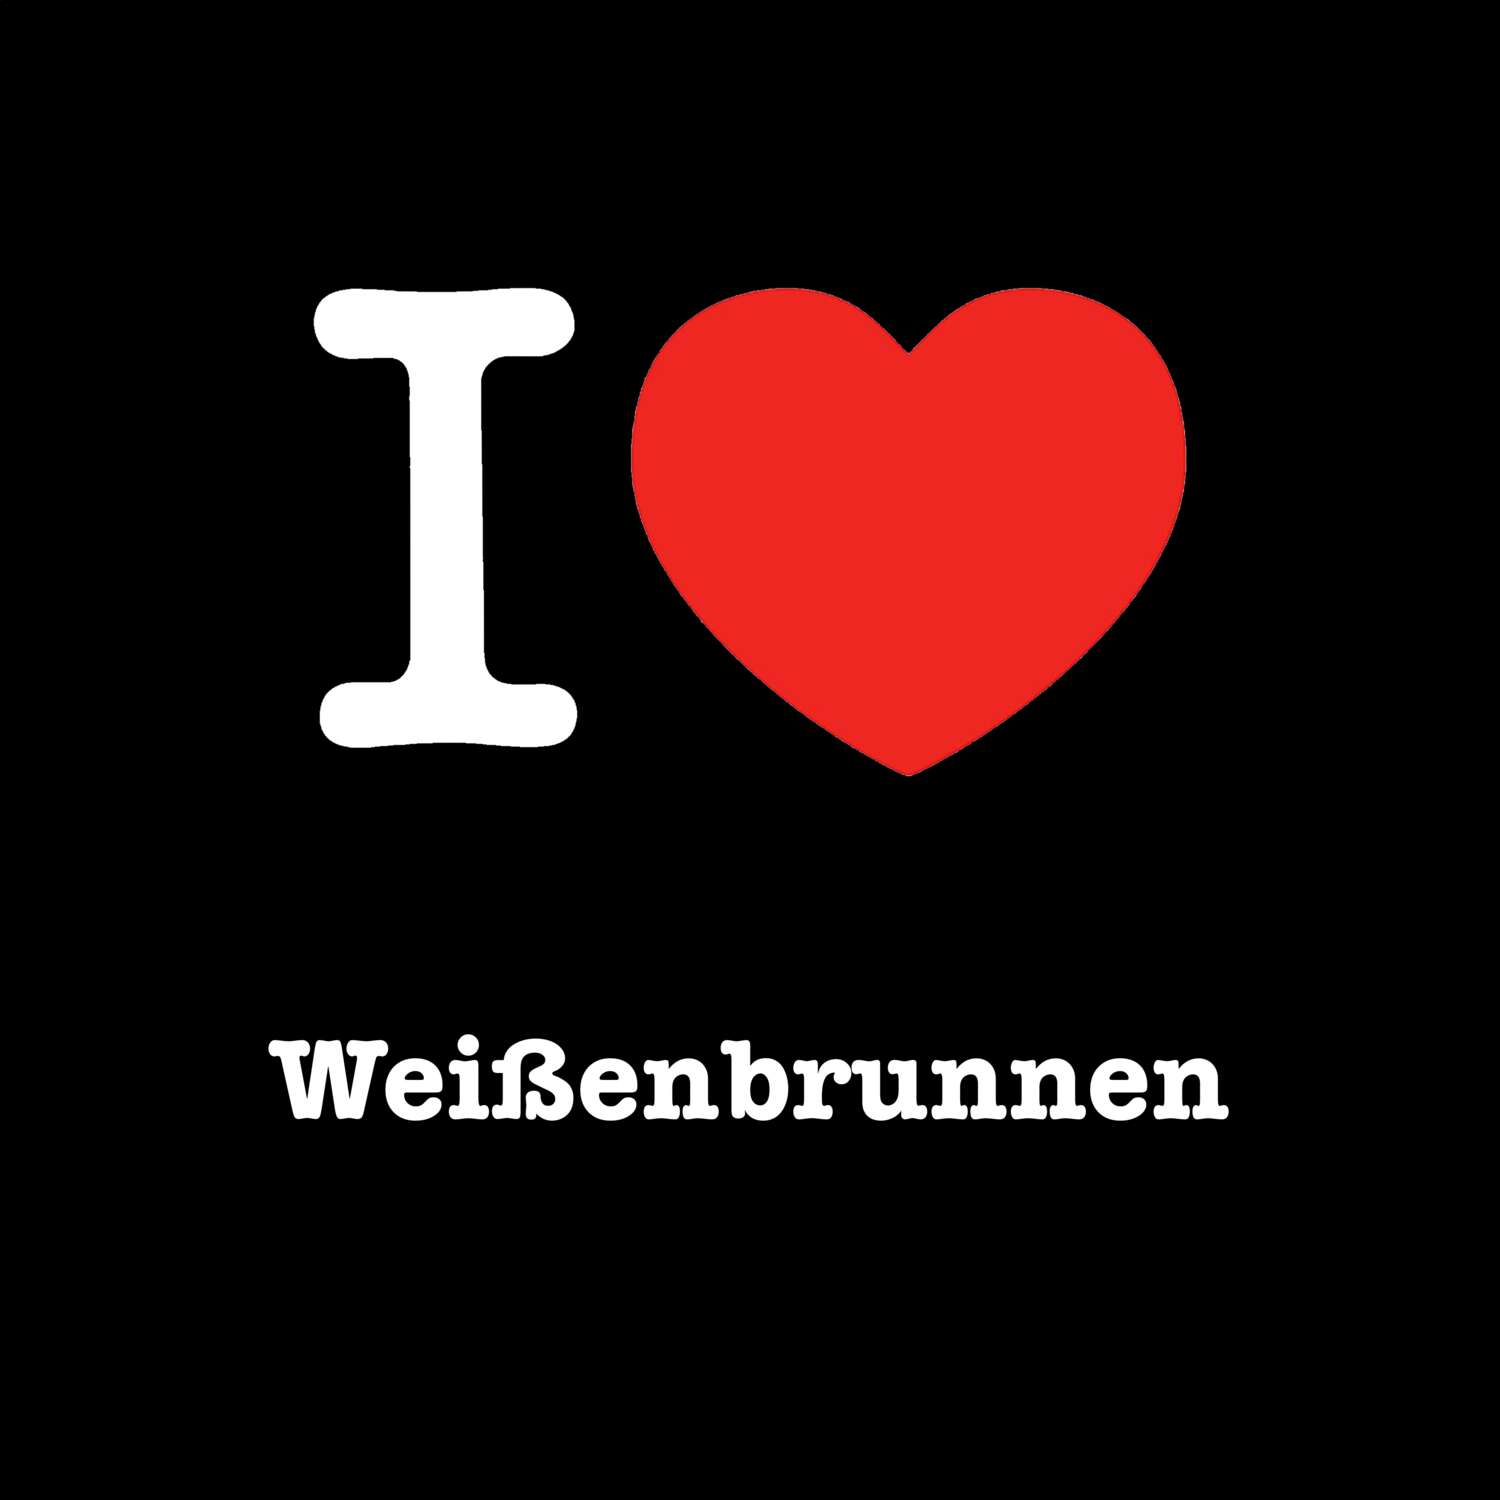 Weißenbrunnen T-Shirt »I love«